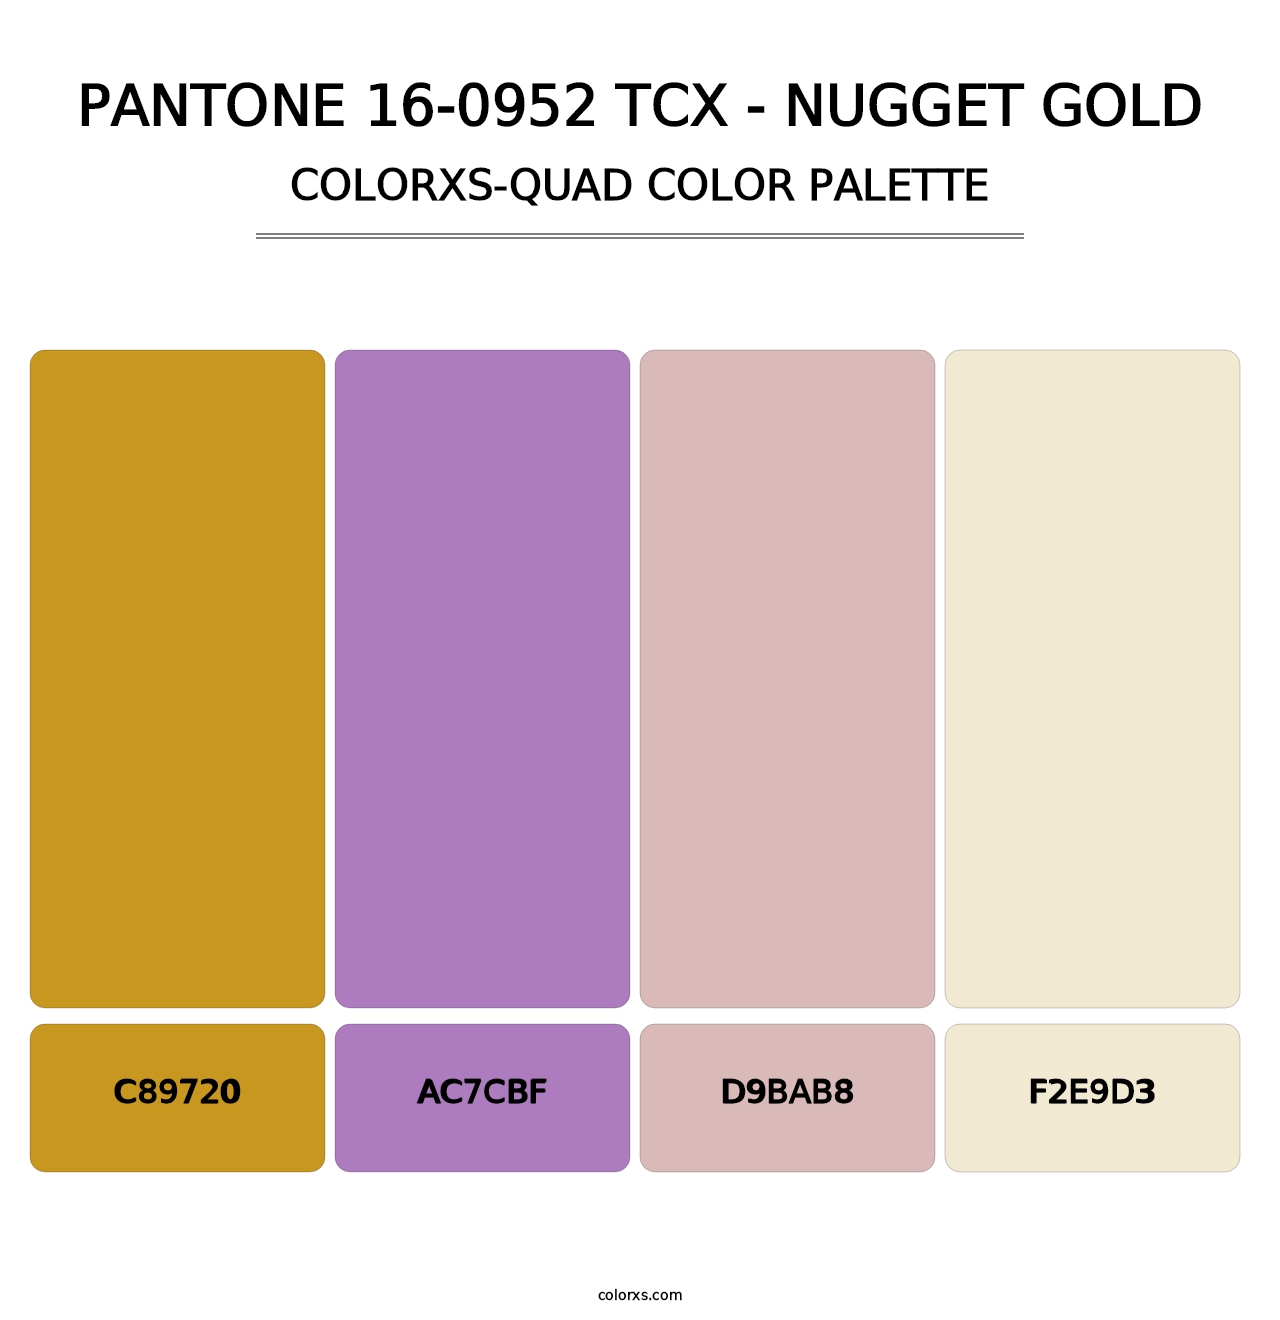 PANTONE 16-0952 TCX - Nugget Gold - Colorxs Quad Palette